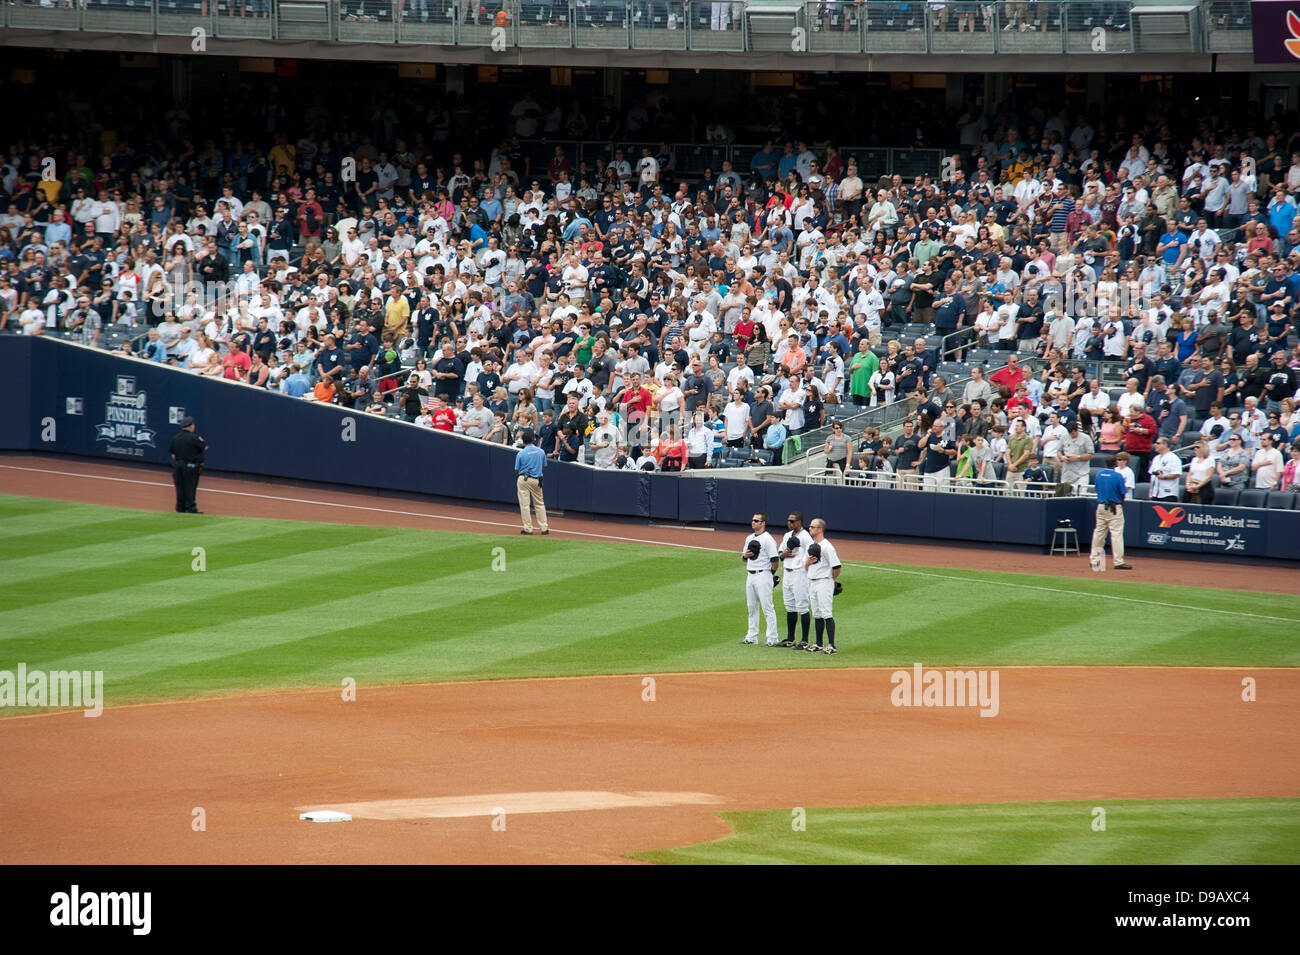 Les Yankees de New York à jouer sur leur terre d'accueil. Banque D'Images